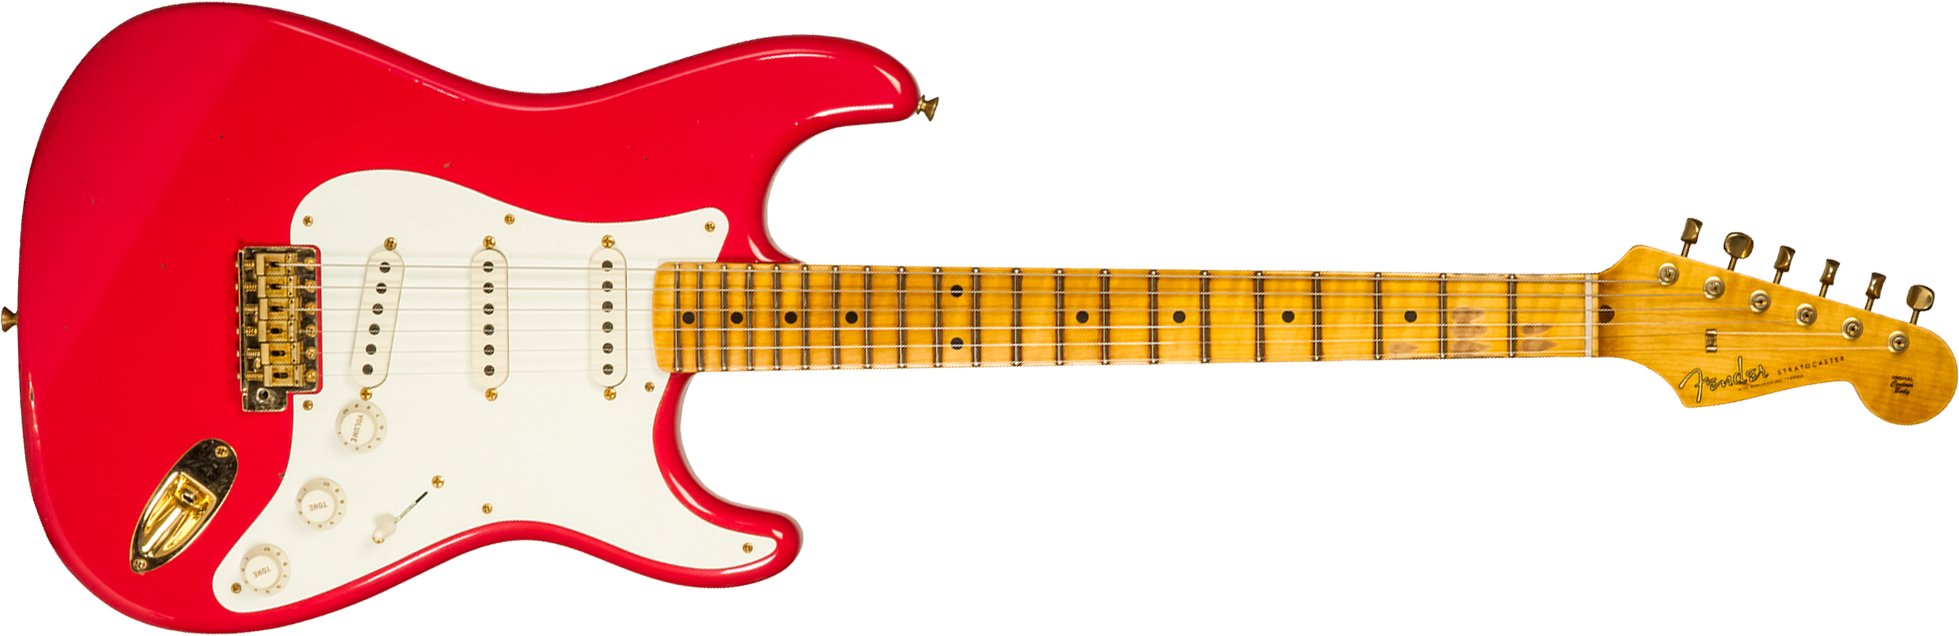 Fender Custom Shop Strat 1956 3s Trem Mn #r130433 - Journeyman Relic Fiesta Red - Elektrische gitaar in Str-vorm - Main picture